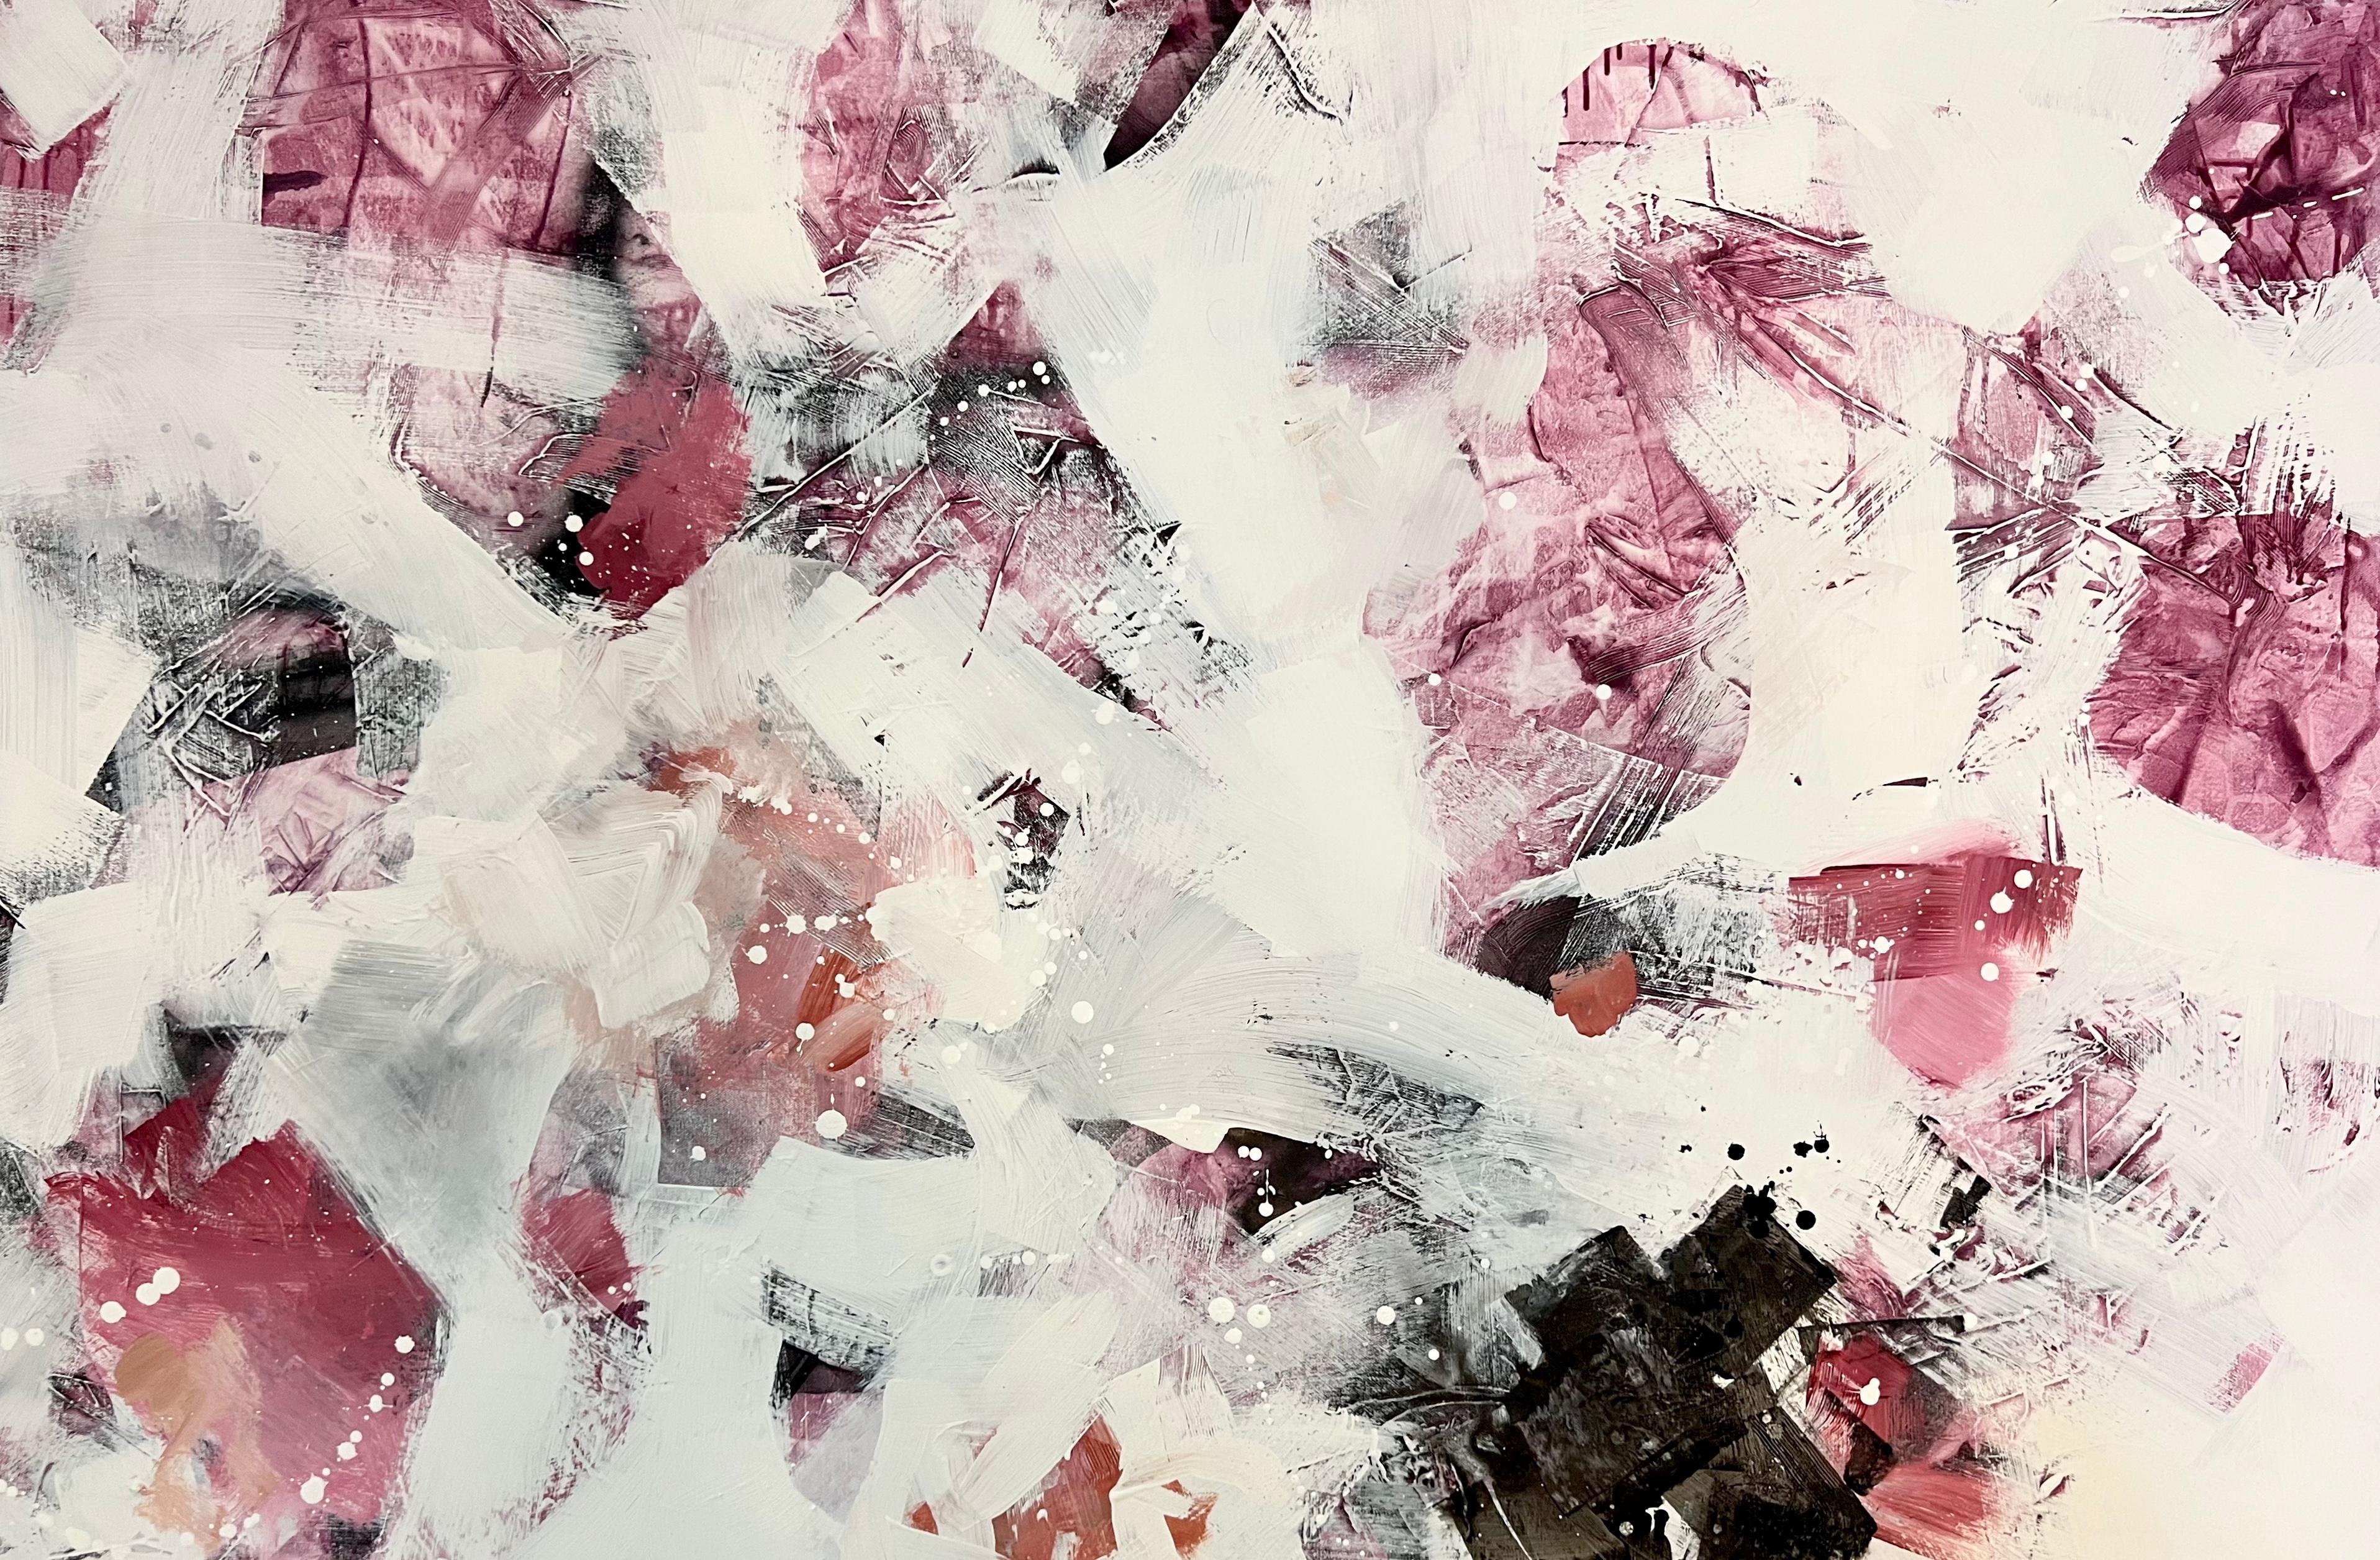 Abstract Painting Annie Mandelkern - Symphonie Bittersweet, techniques mixtes, peinture abstraite sur toile, signée 